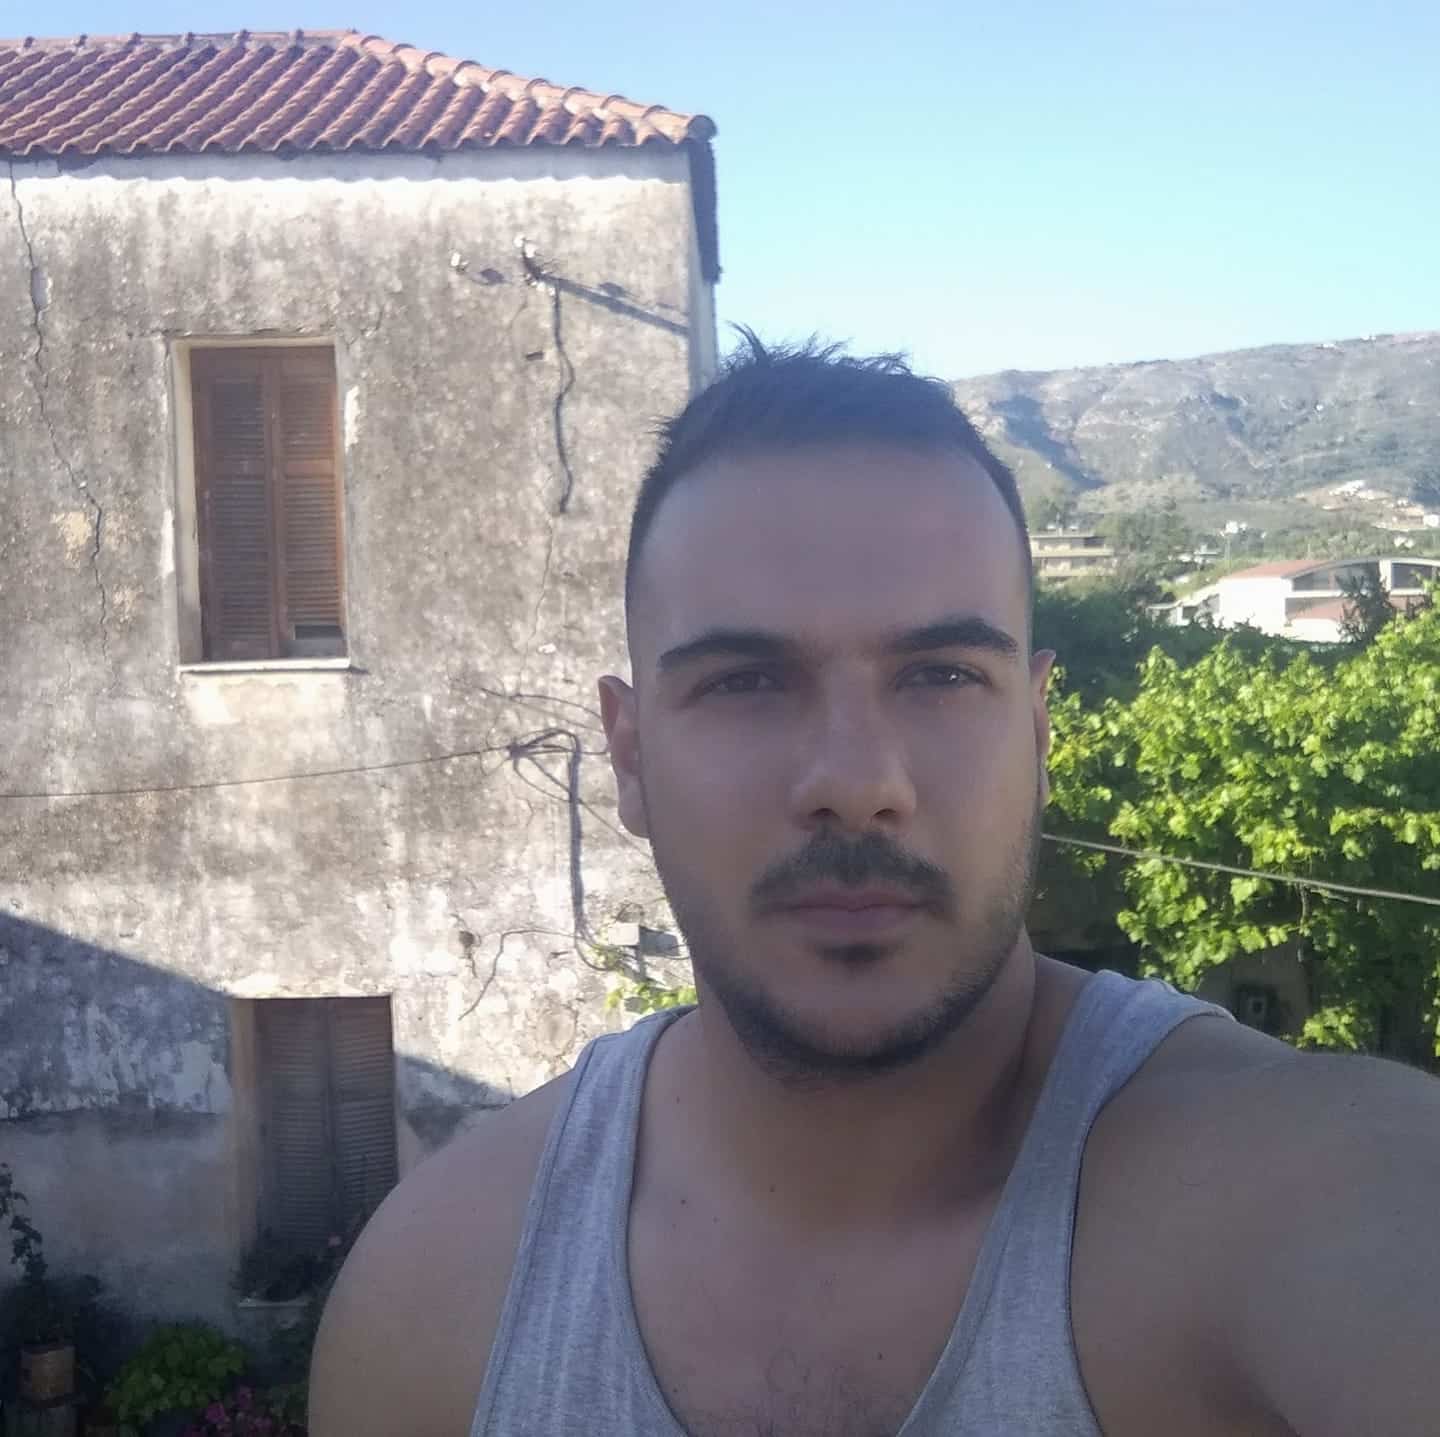 Αυτός είναι ο 31χρονος αστυνομικός που σκοτώθηκε στον Πειραιά - Το χρονικό της τραγωδίας (εικόνες)